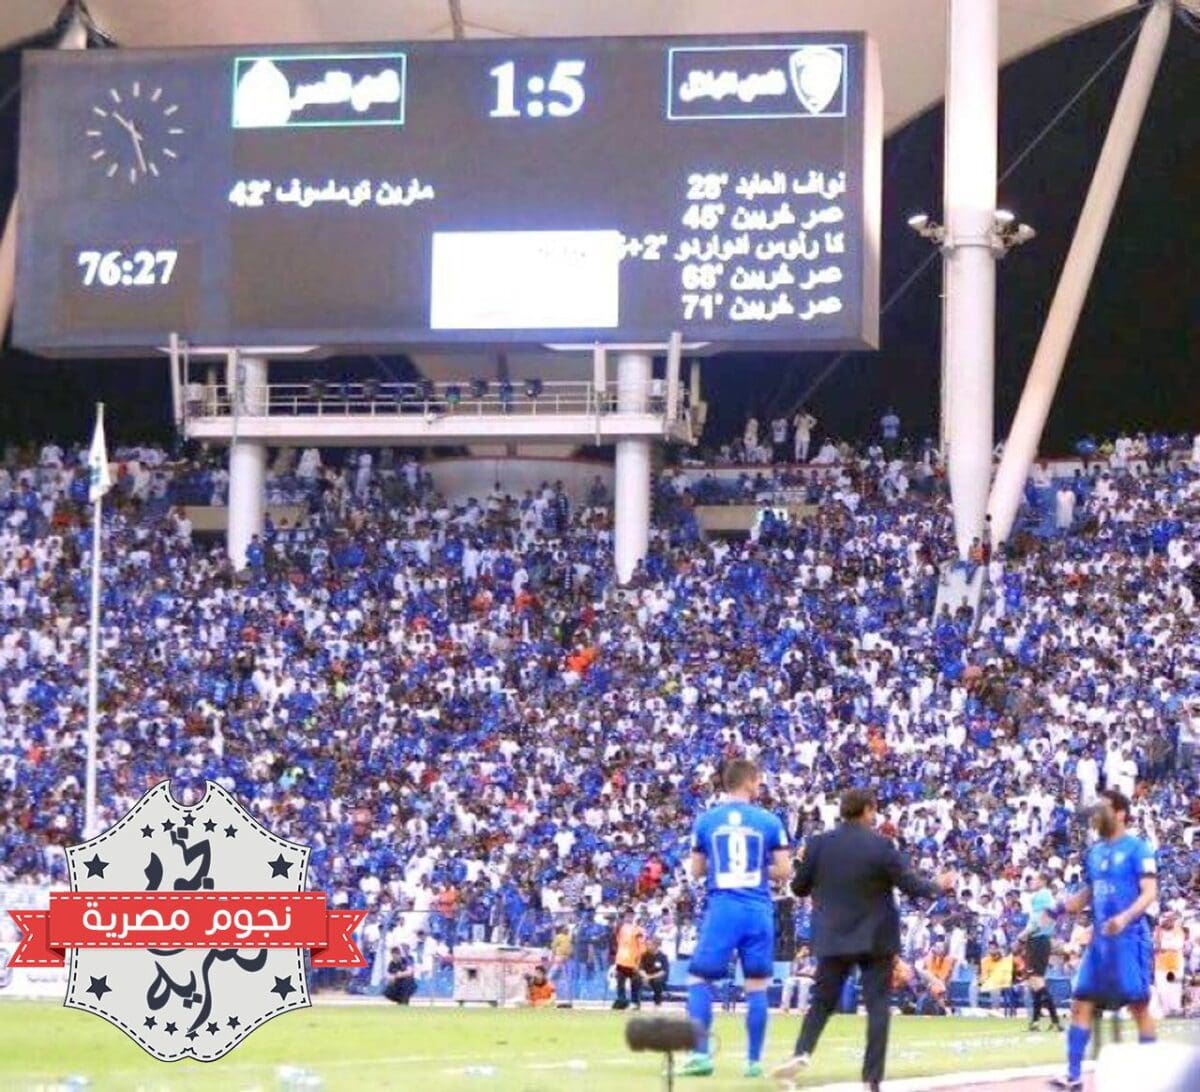 من مواجهة النصر والهلال (1-5) في الدوري السعودي 2017